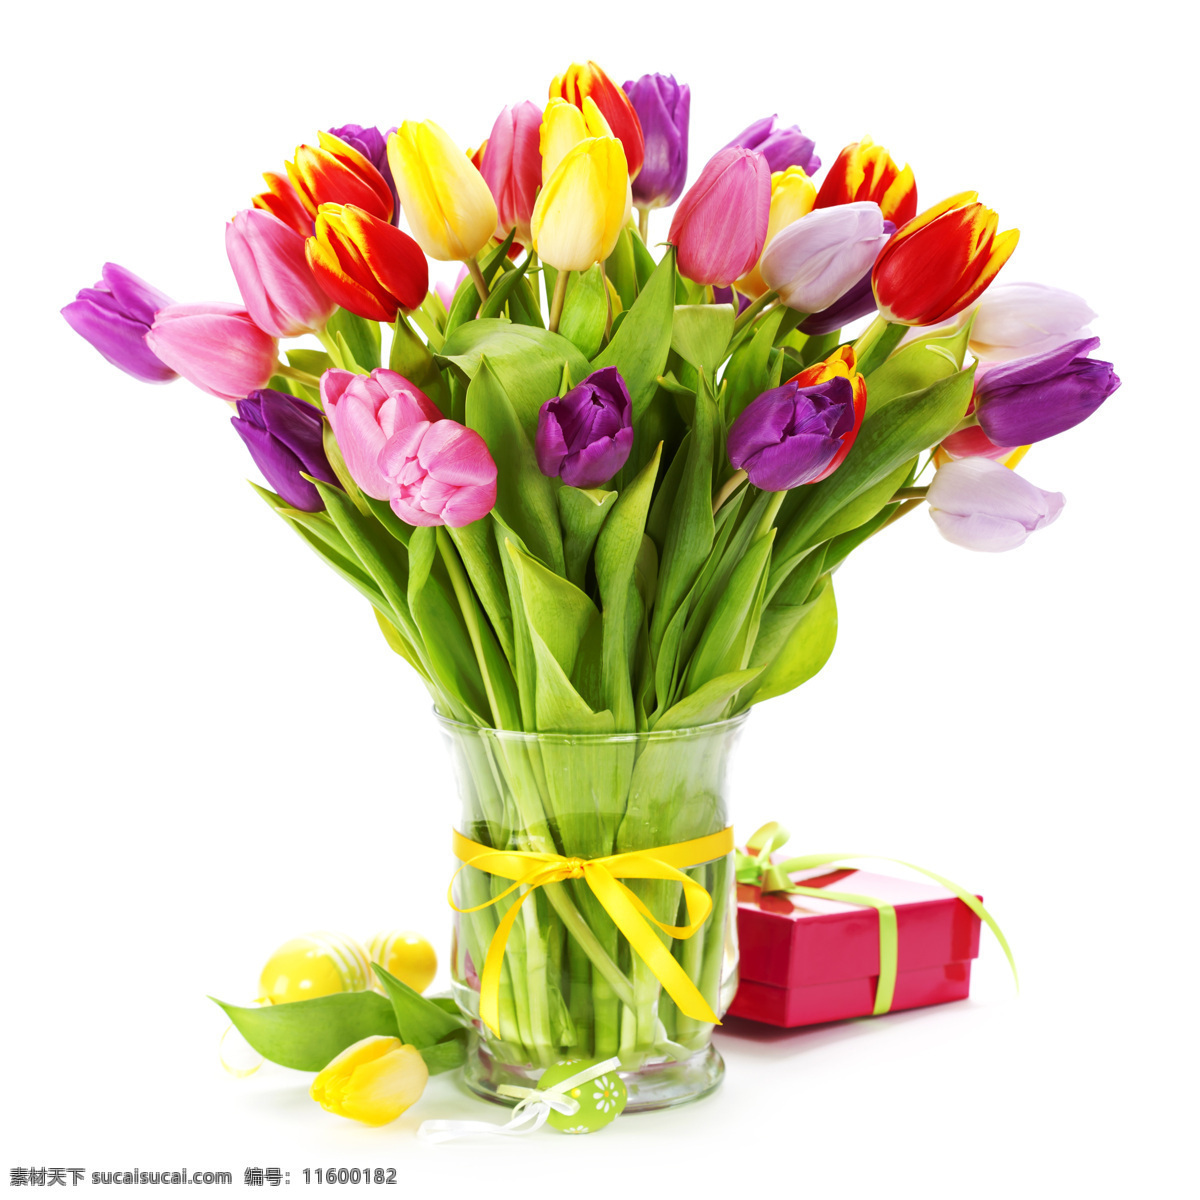 礼物 盒 郁金香 植物花朵 花瓣 美丽鲜花 漂亮花朵 花卉 鲜花摄影 花草树木 生物世界